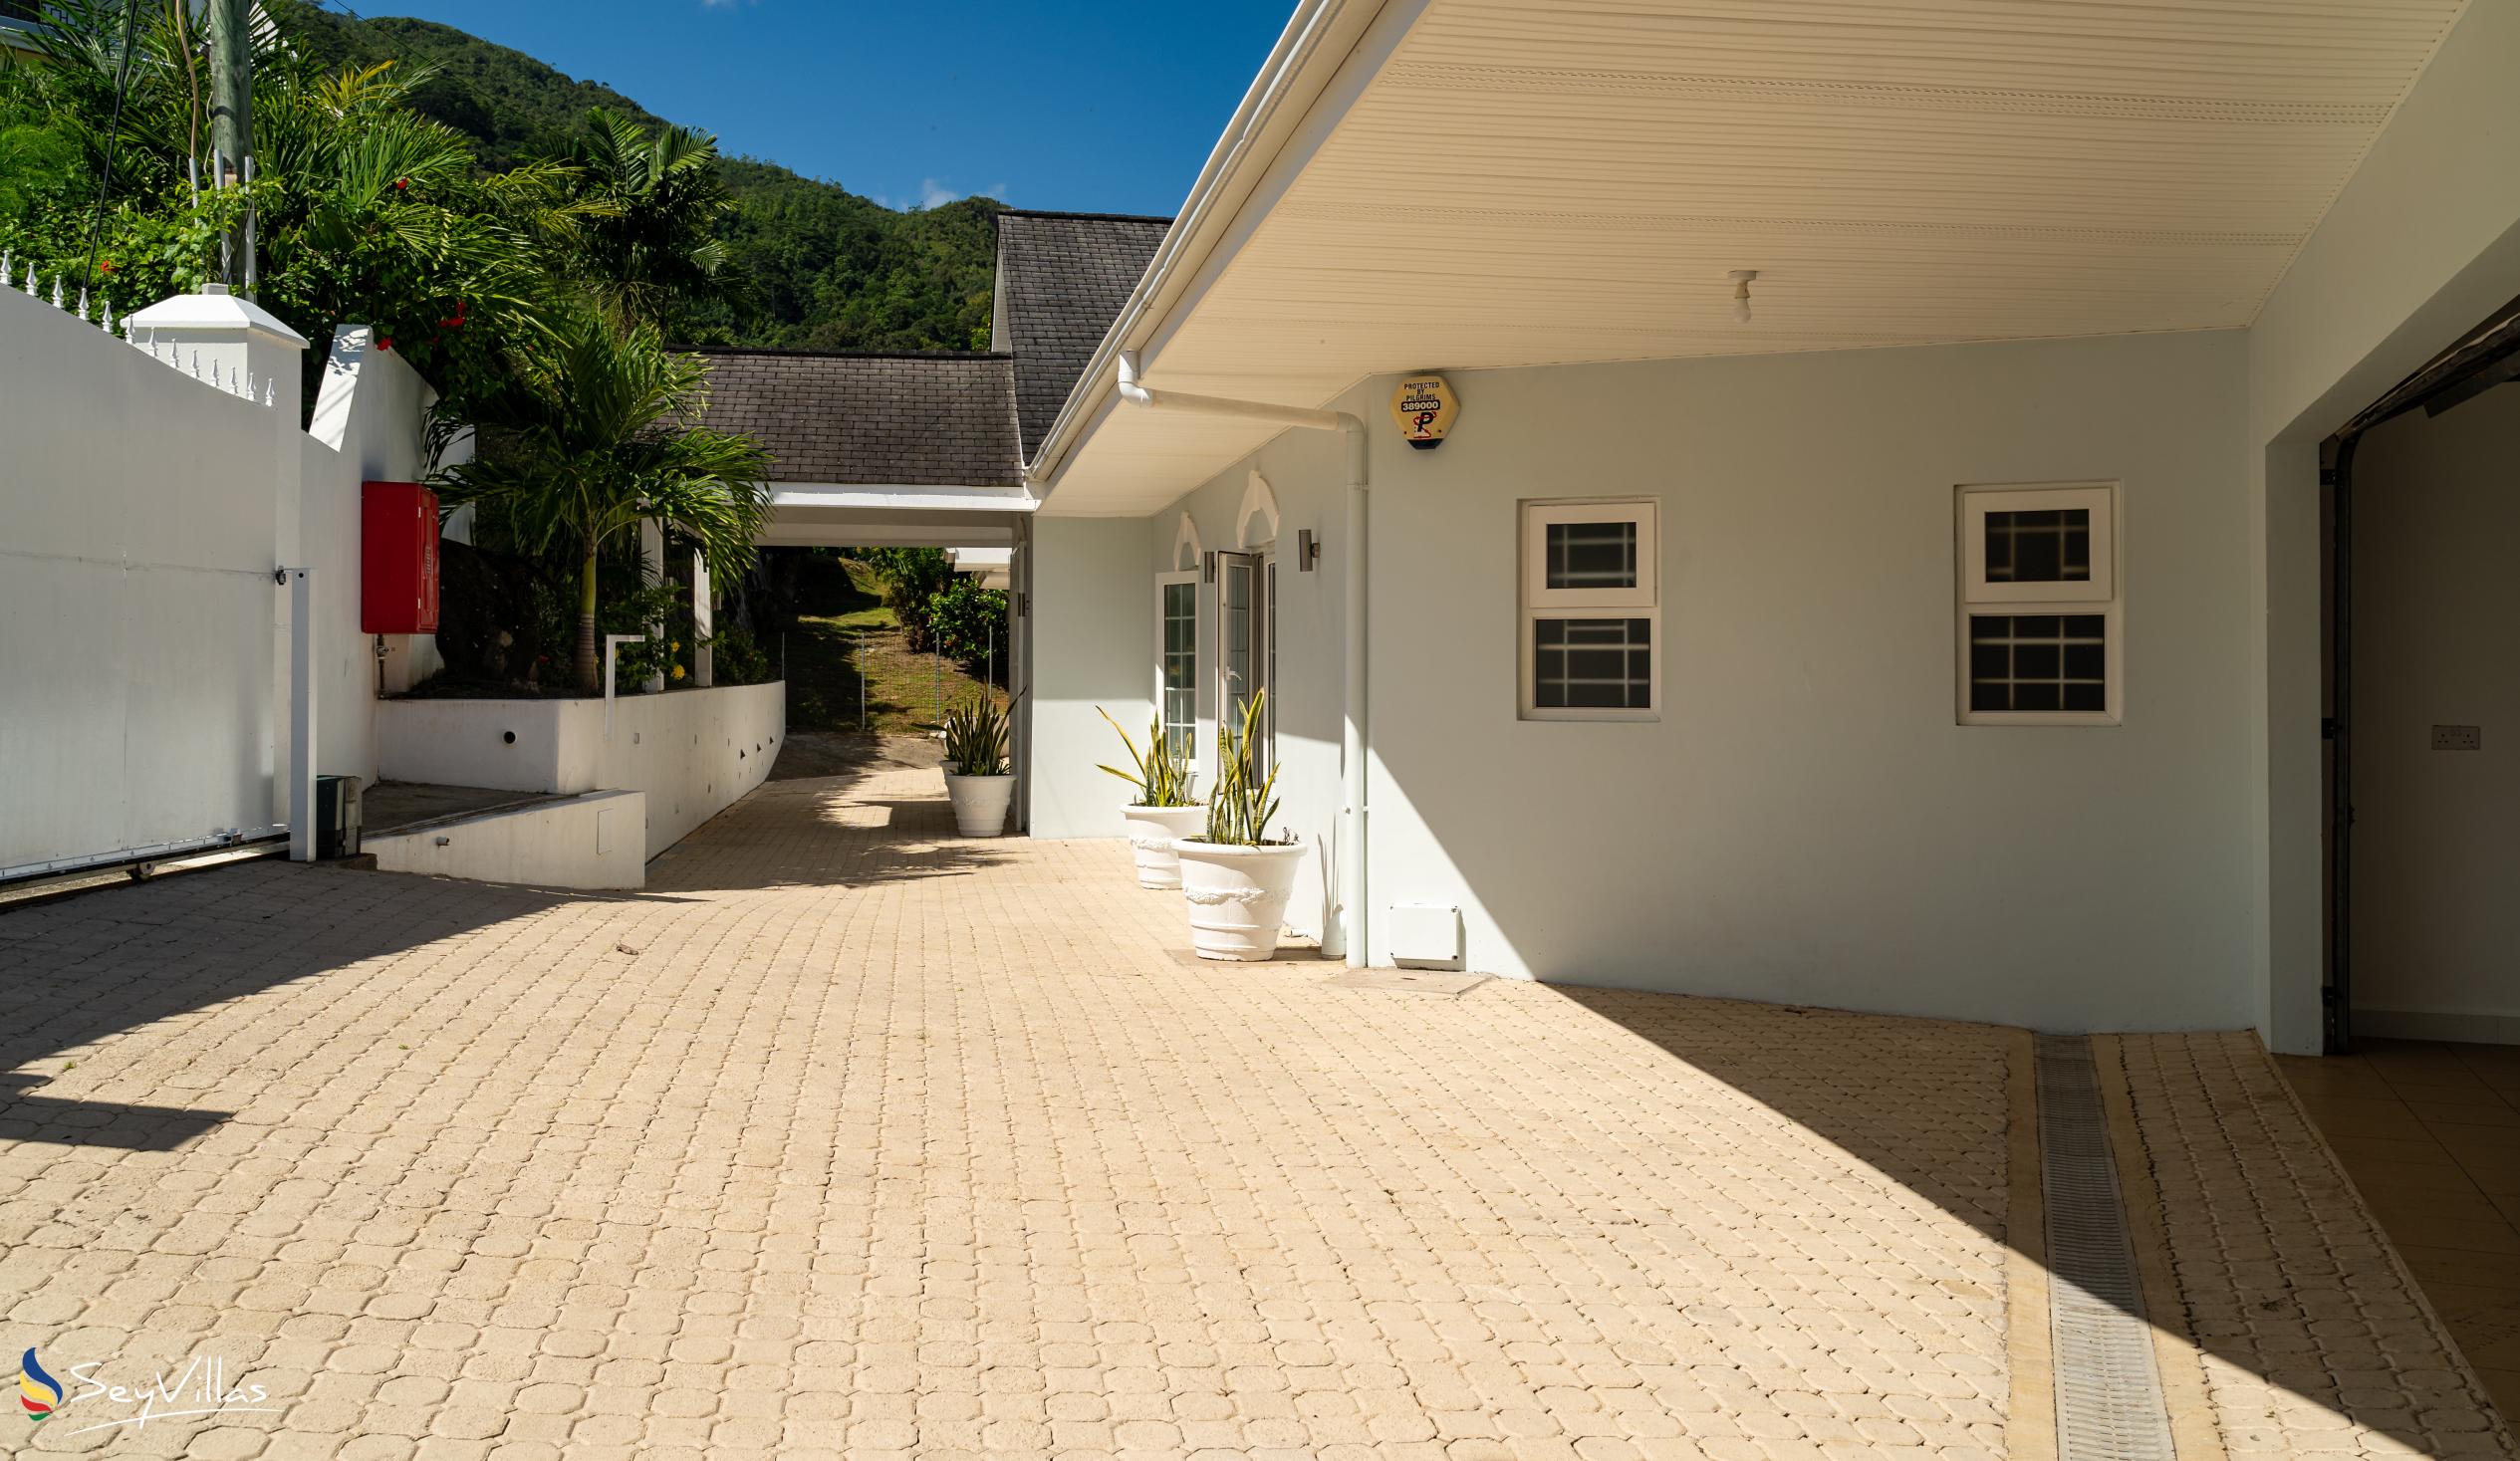 Foto 21: Villa Jasmin - Aussenbereich - Mahé (Seychellen)